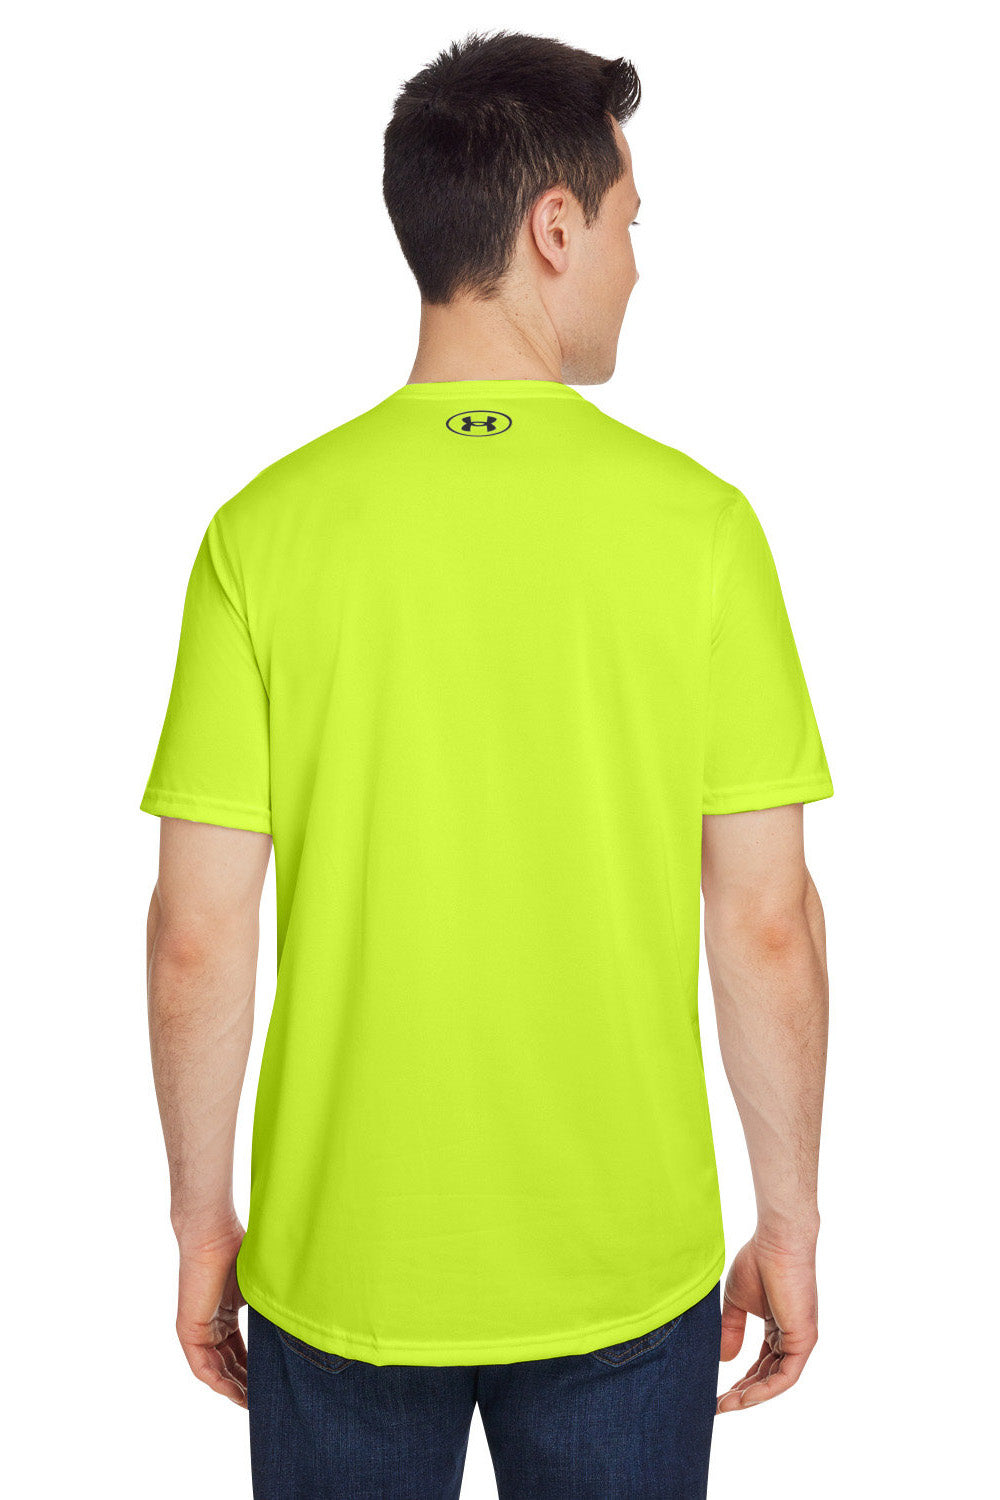 Under Armour Tech 2.0 Short Sleeve T-Shirt Green - 3XL